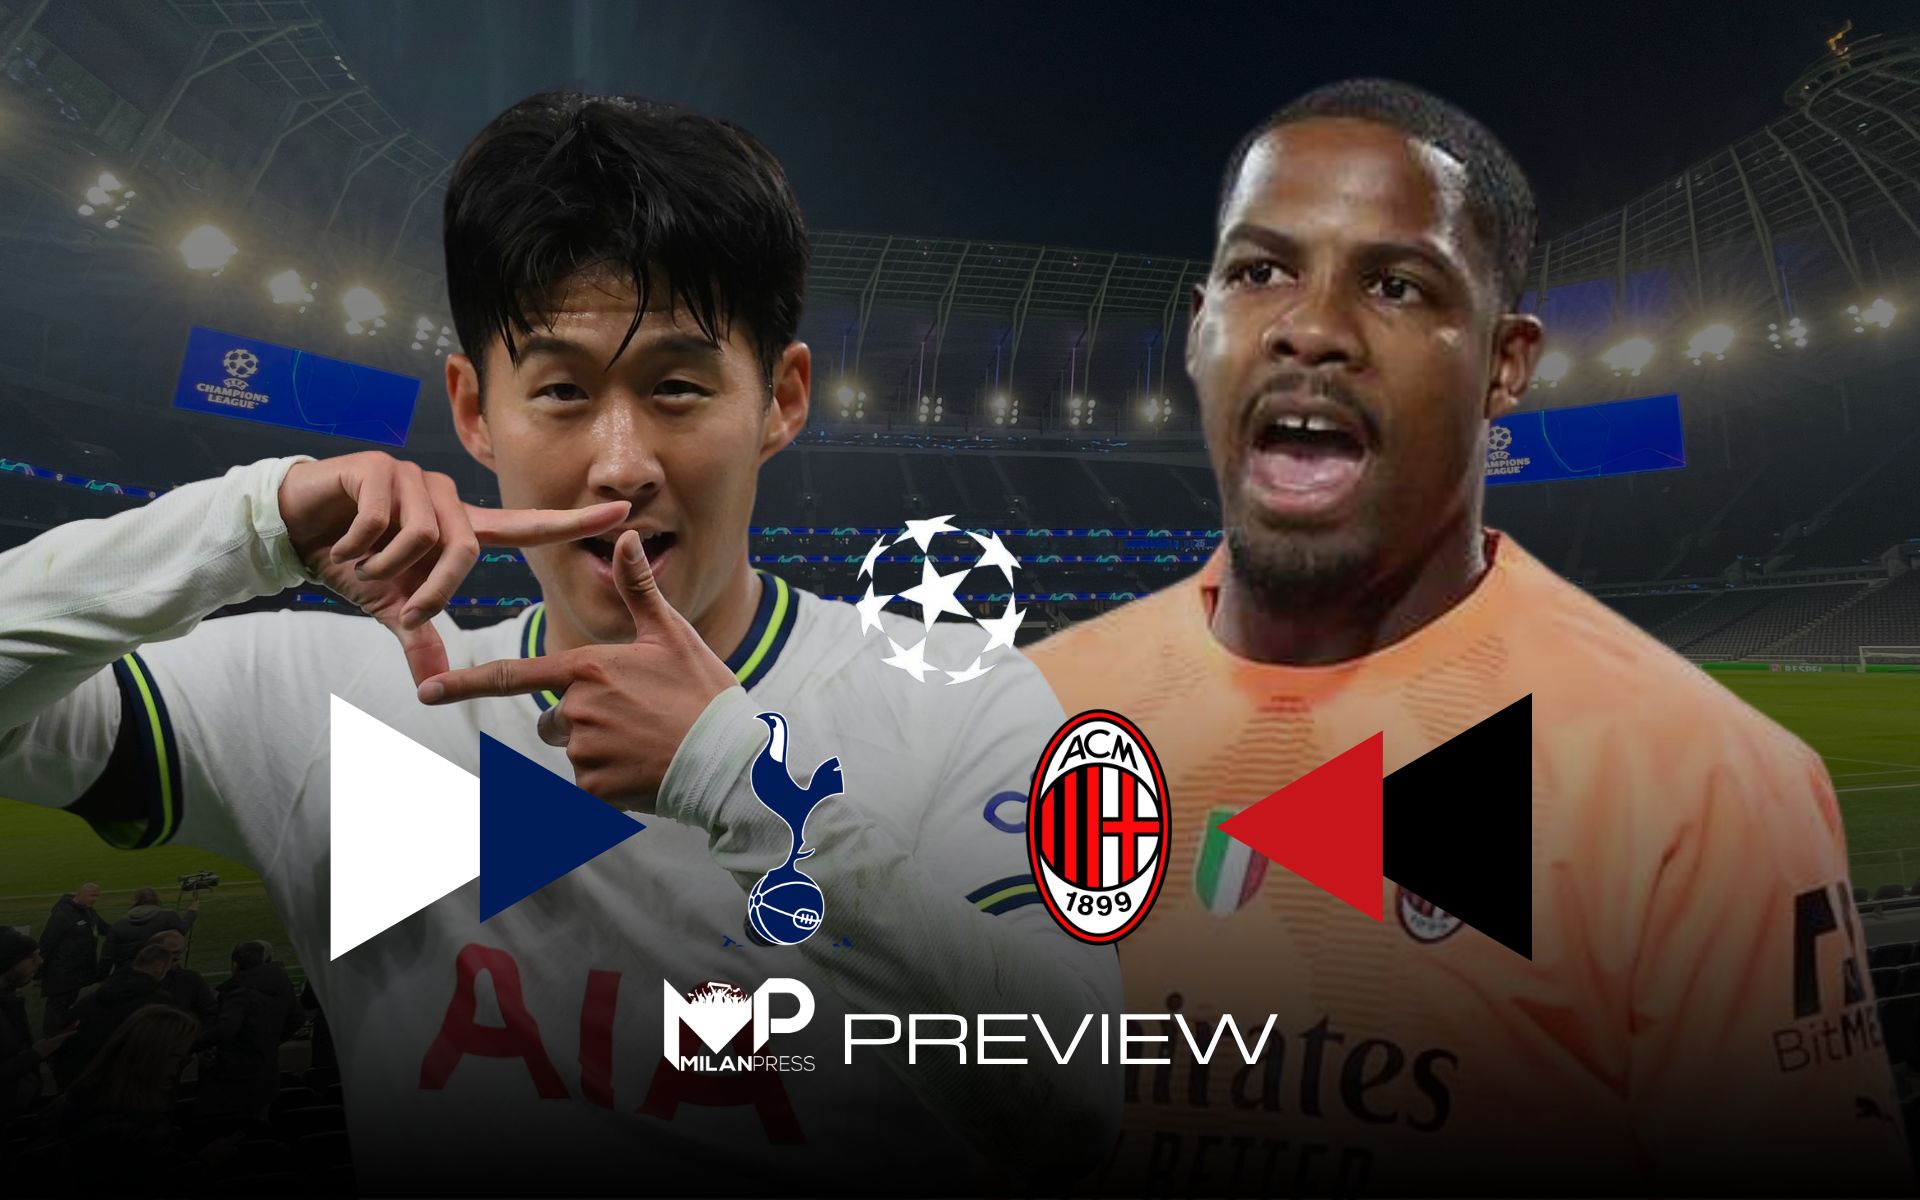 Tottenham-Milan Preview - MilanPress, robe dell'altro diavolo